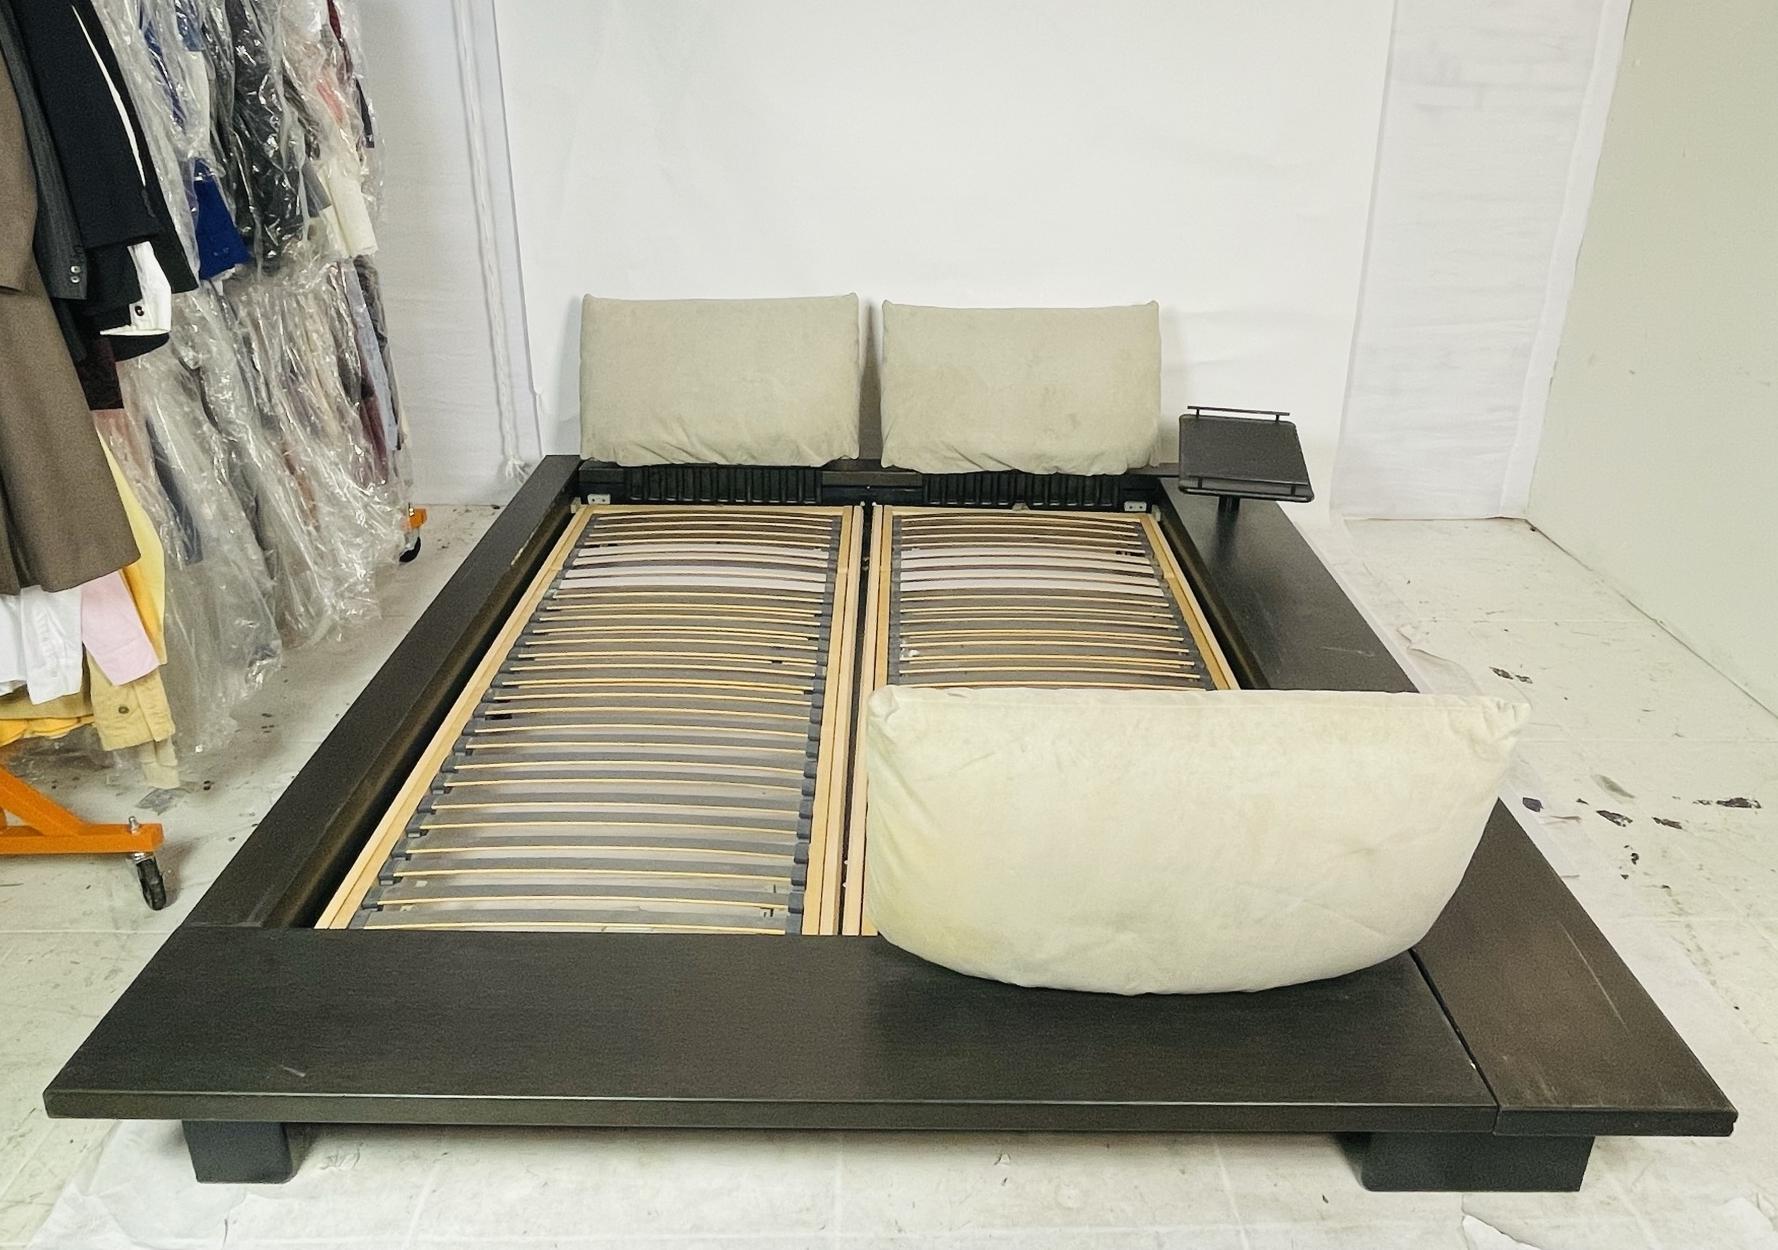 Dies ist das ikonische Original-Plattformbett, das der deutsche Designer Peter Maly für Ligne Roset entworfen hat und das 1998 in San Francisco erworben wurde. Es handelt sich um ein europäisches Queensize-Bett, und der Rahmen ist aus einem schönen